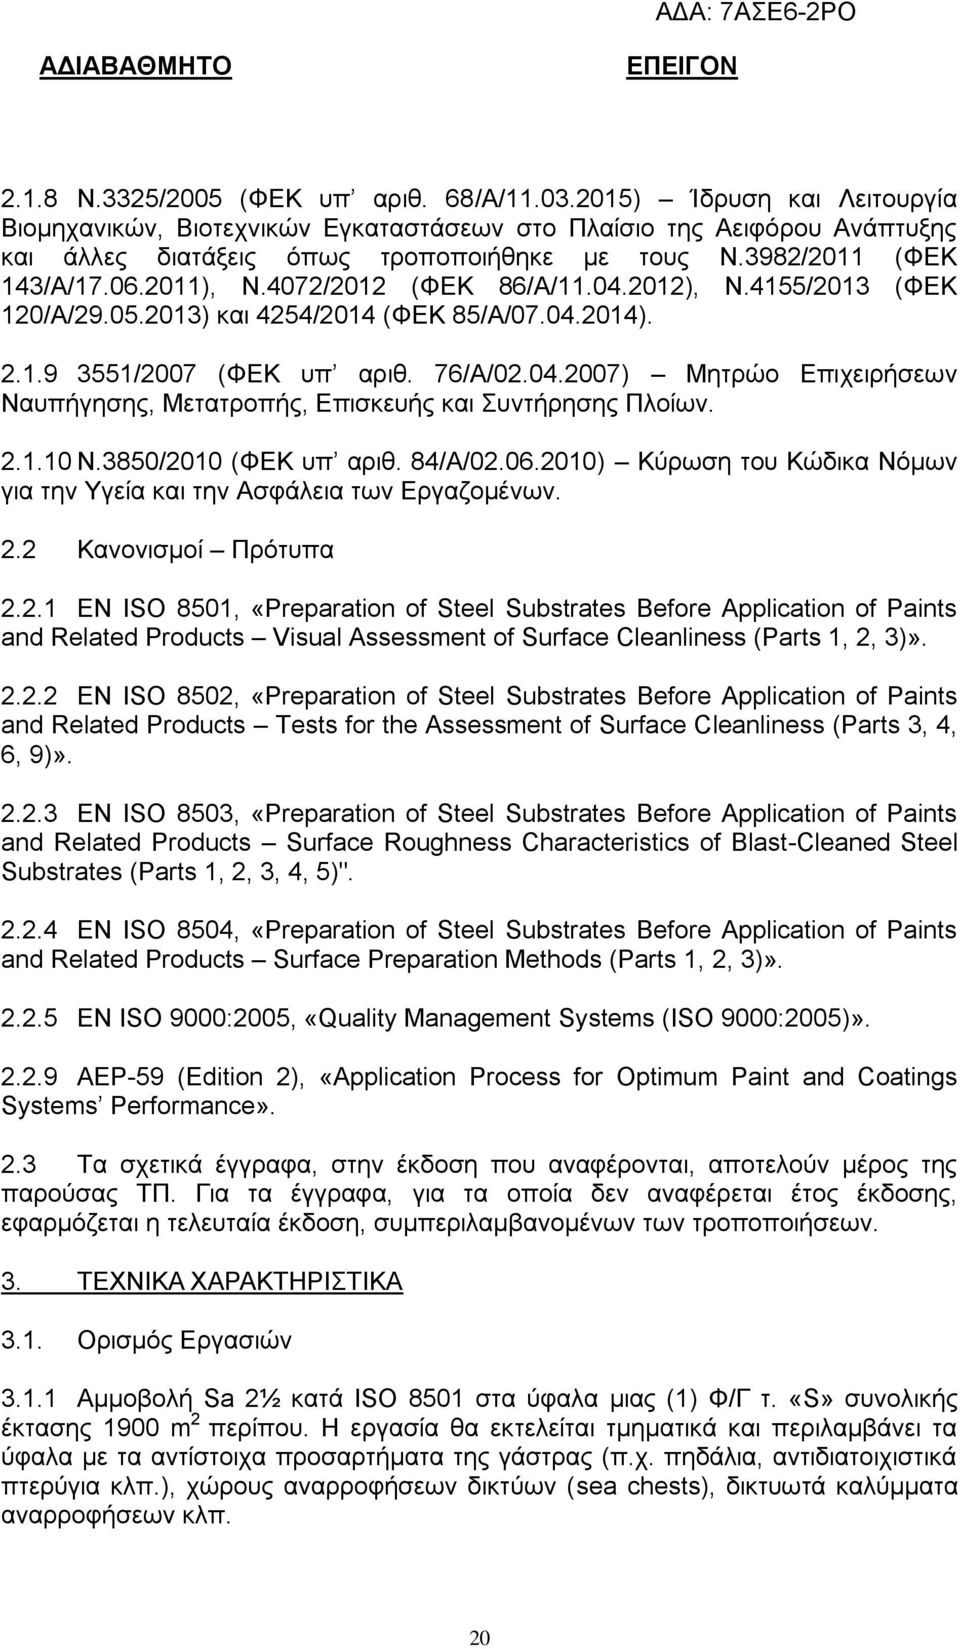 2.1.10 Ν.3850/2010 (ΦΕΚ υπ αριθ. 84/Α/02.06.2010) Κύρωση του Κώδικα Νόμων για την Υγεία και την Ασφάλεια των Εργαζομένων. 2.2 Κανονισμοί Πρότυπα 2.2.1 EN ISO 8501, «Preparation of Steel Substrates Before Application of Paints and Related Products Visual Assessment of Surface Cleanliness (Parts 1, 2, 3)».